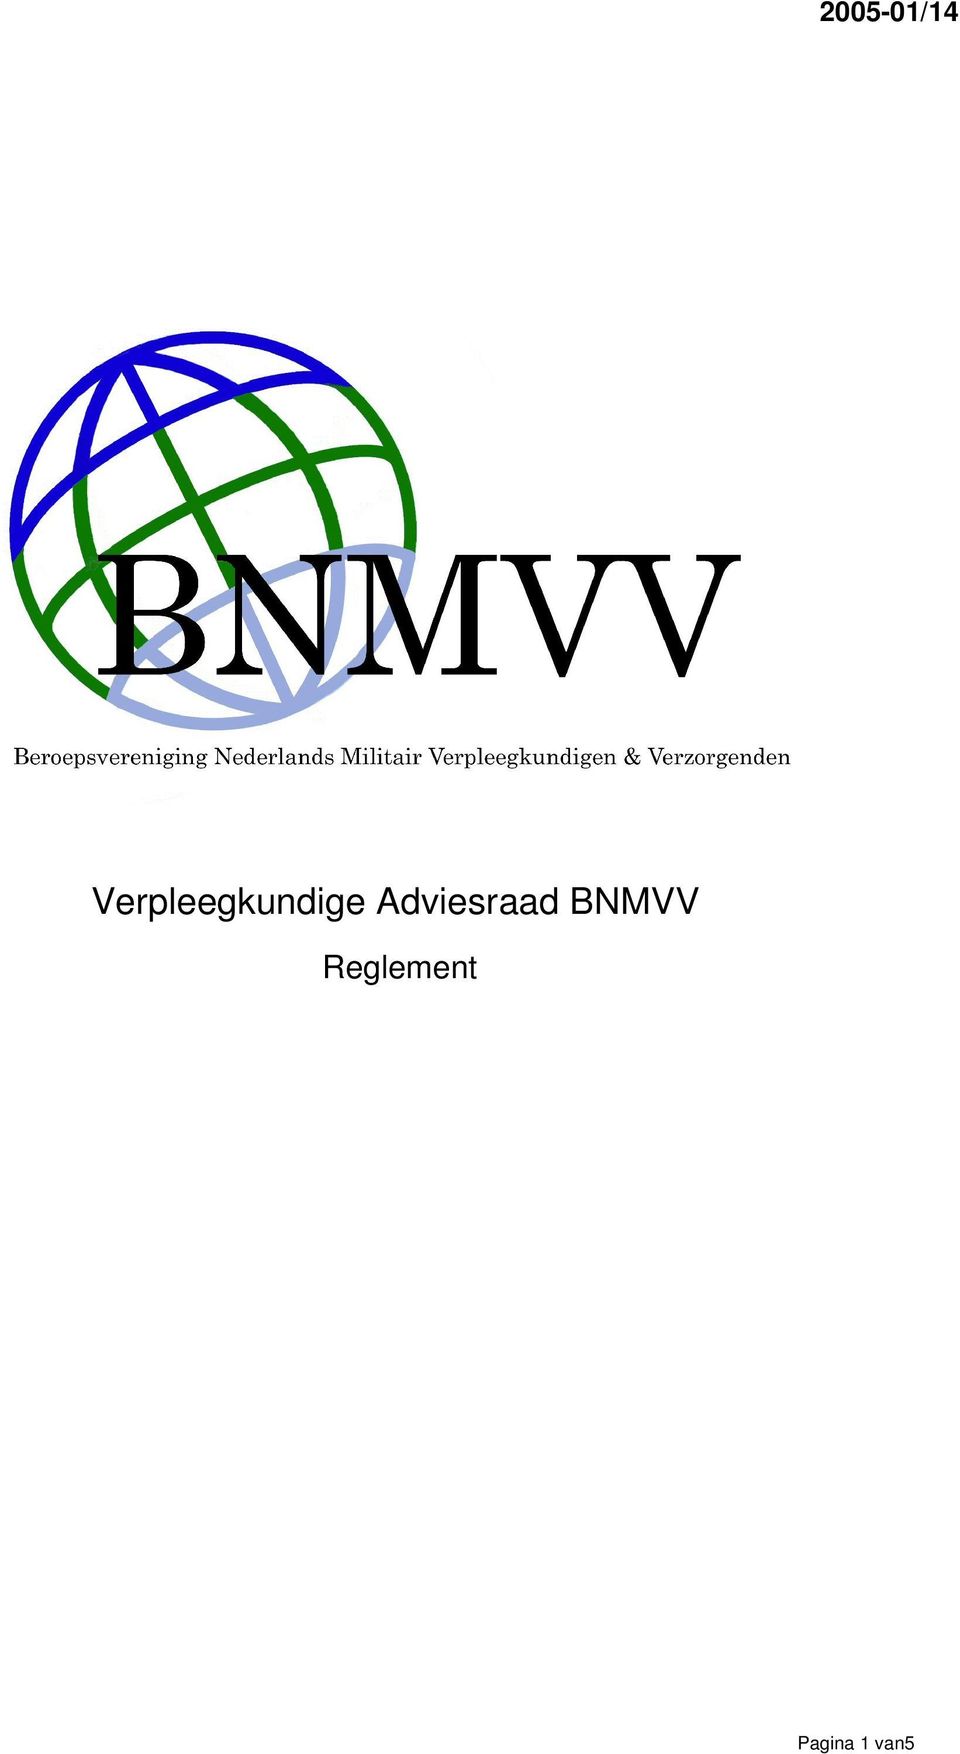 Adviesraad BNMVV